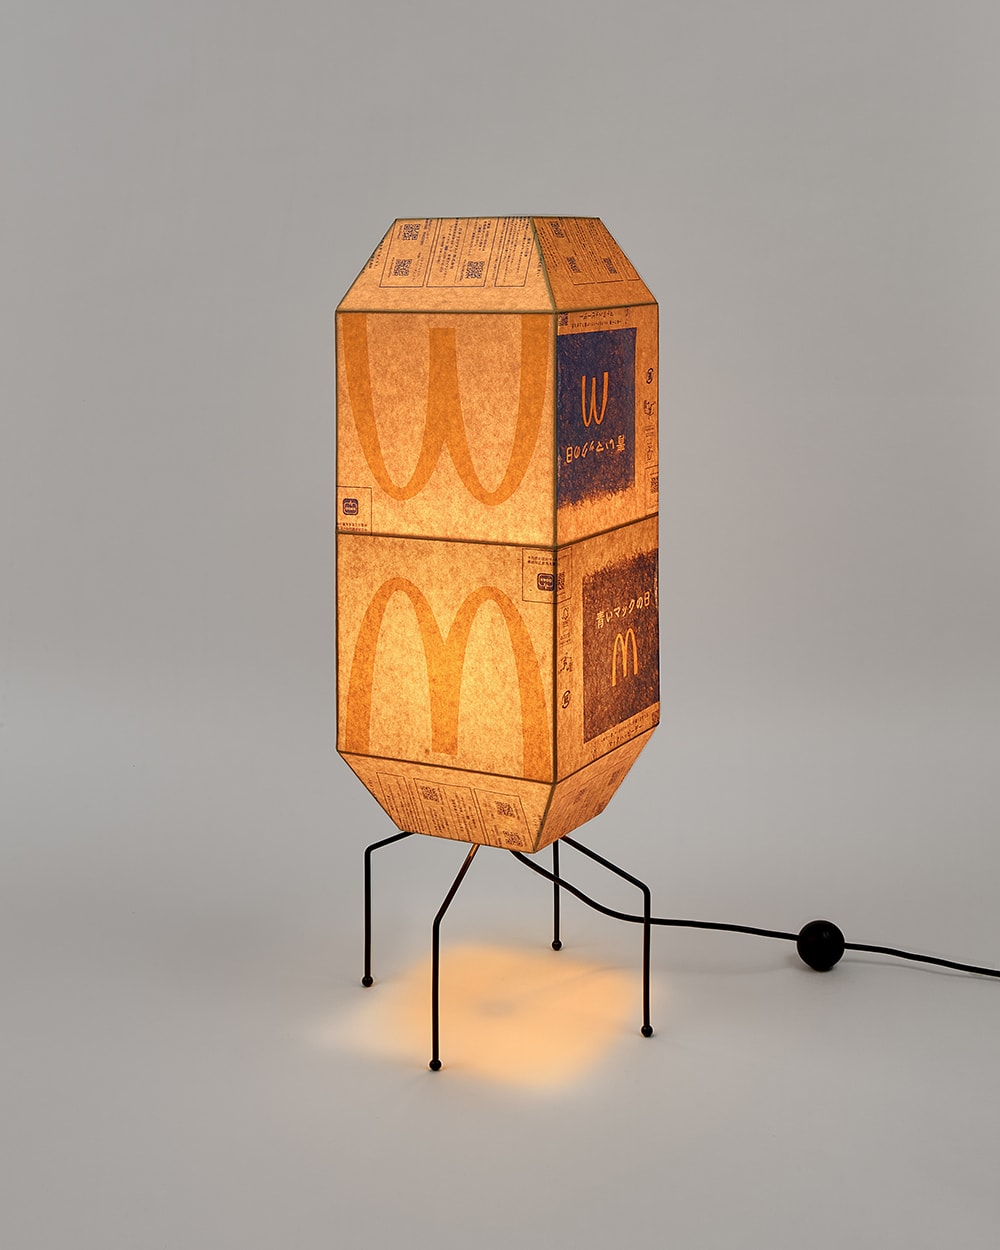 韓國藝術家 Gyu Han Lee 回收使用 McDonald's 紙袋打造燈飾創作系列